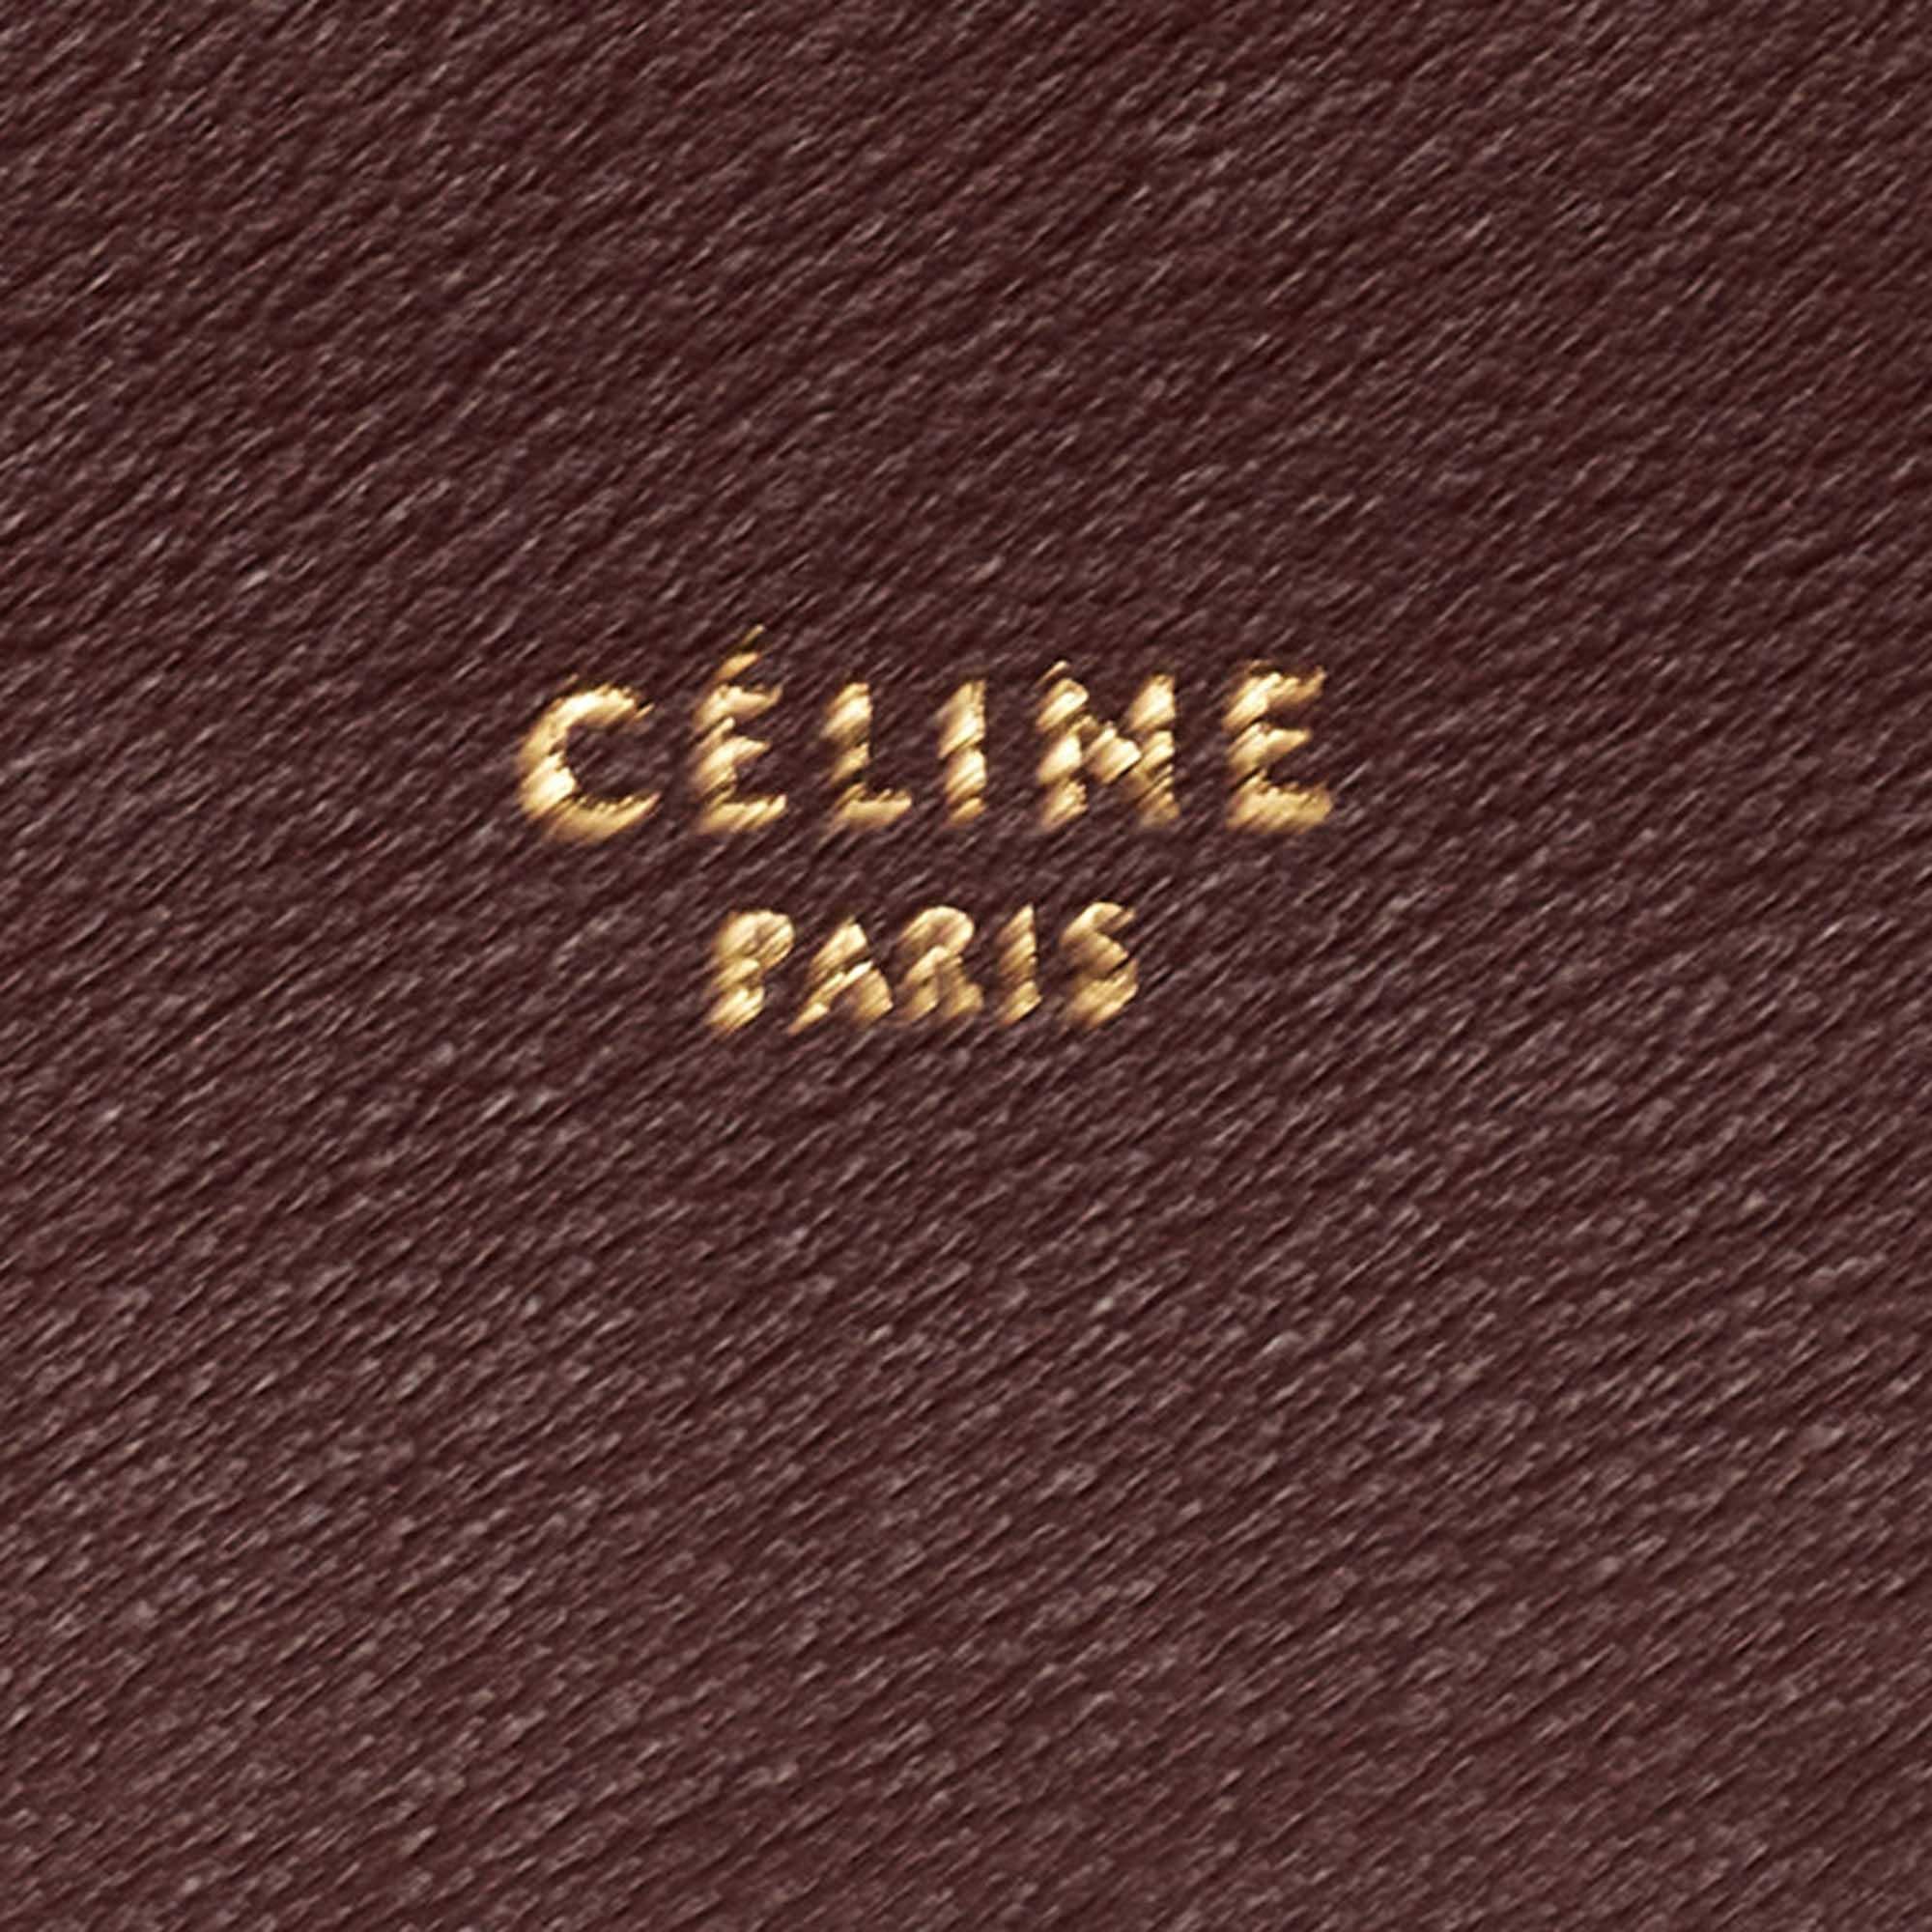 Celine Tri Color Leather All Soft Shoulder Bag 6